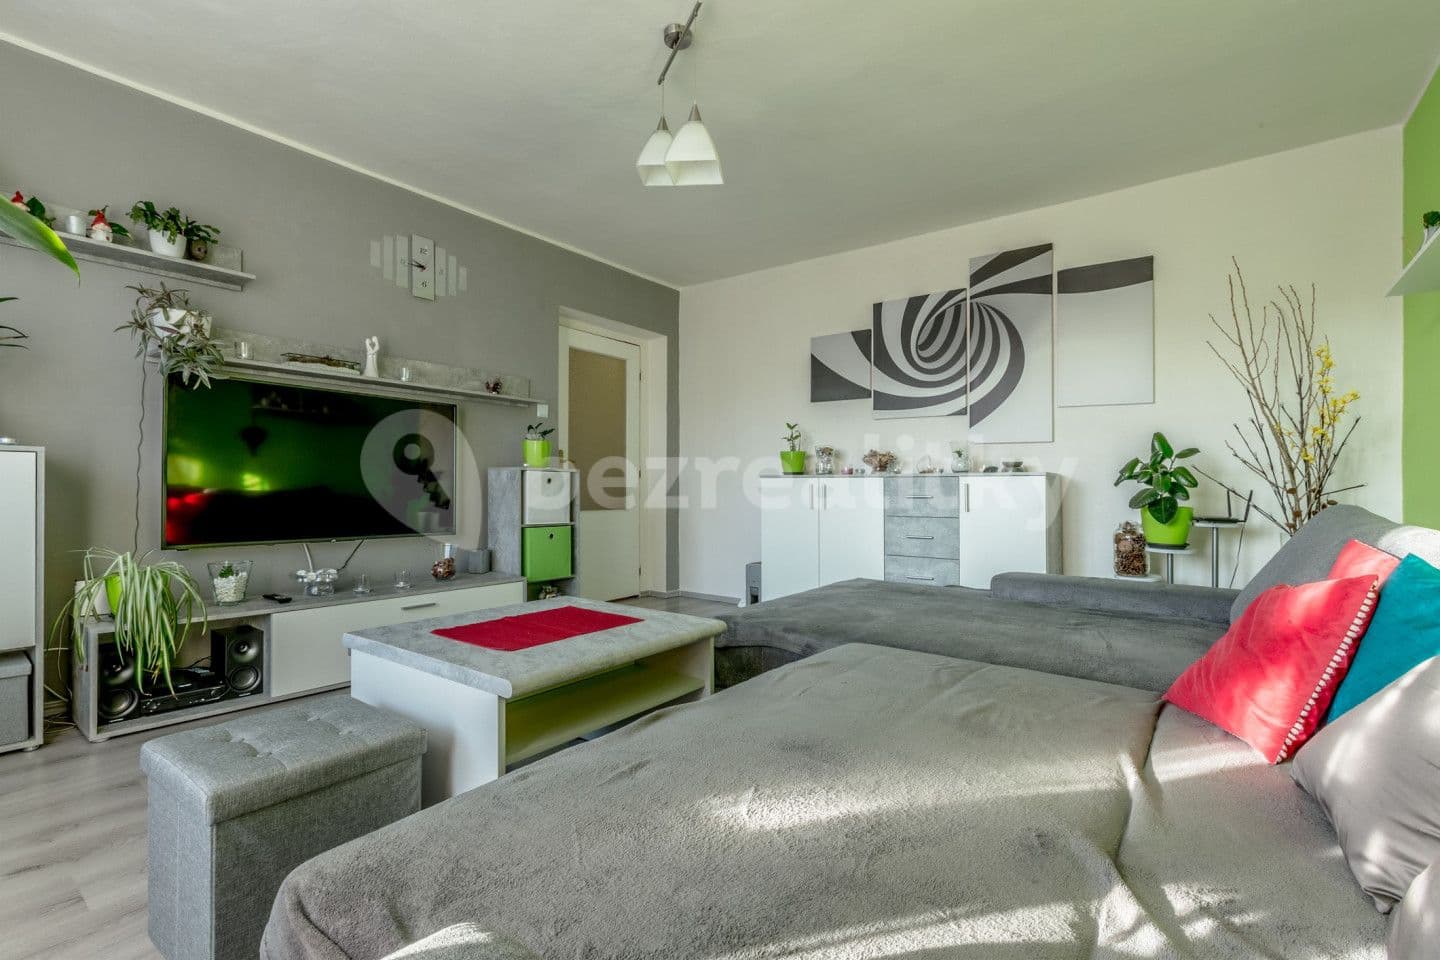 3 bedroom flat for sale, 84 m², Lobeč, Středočeský Region